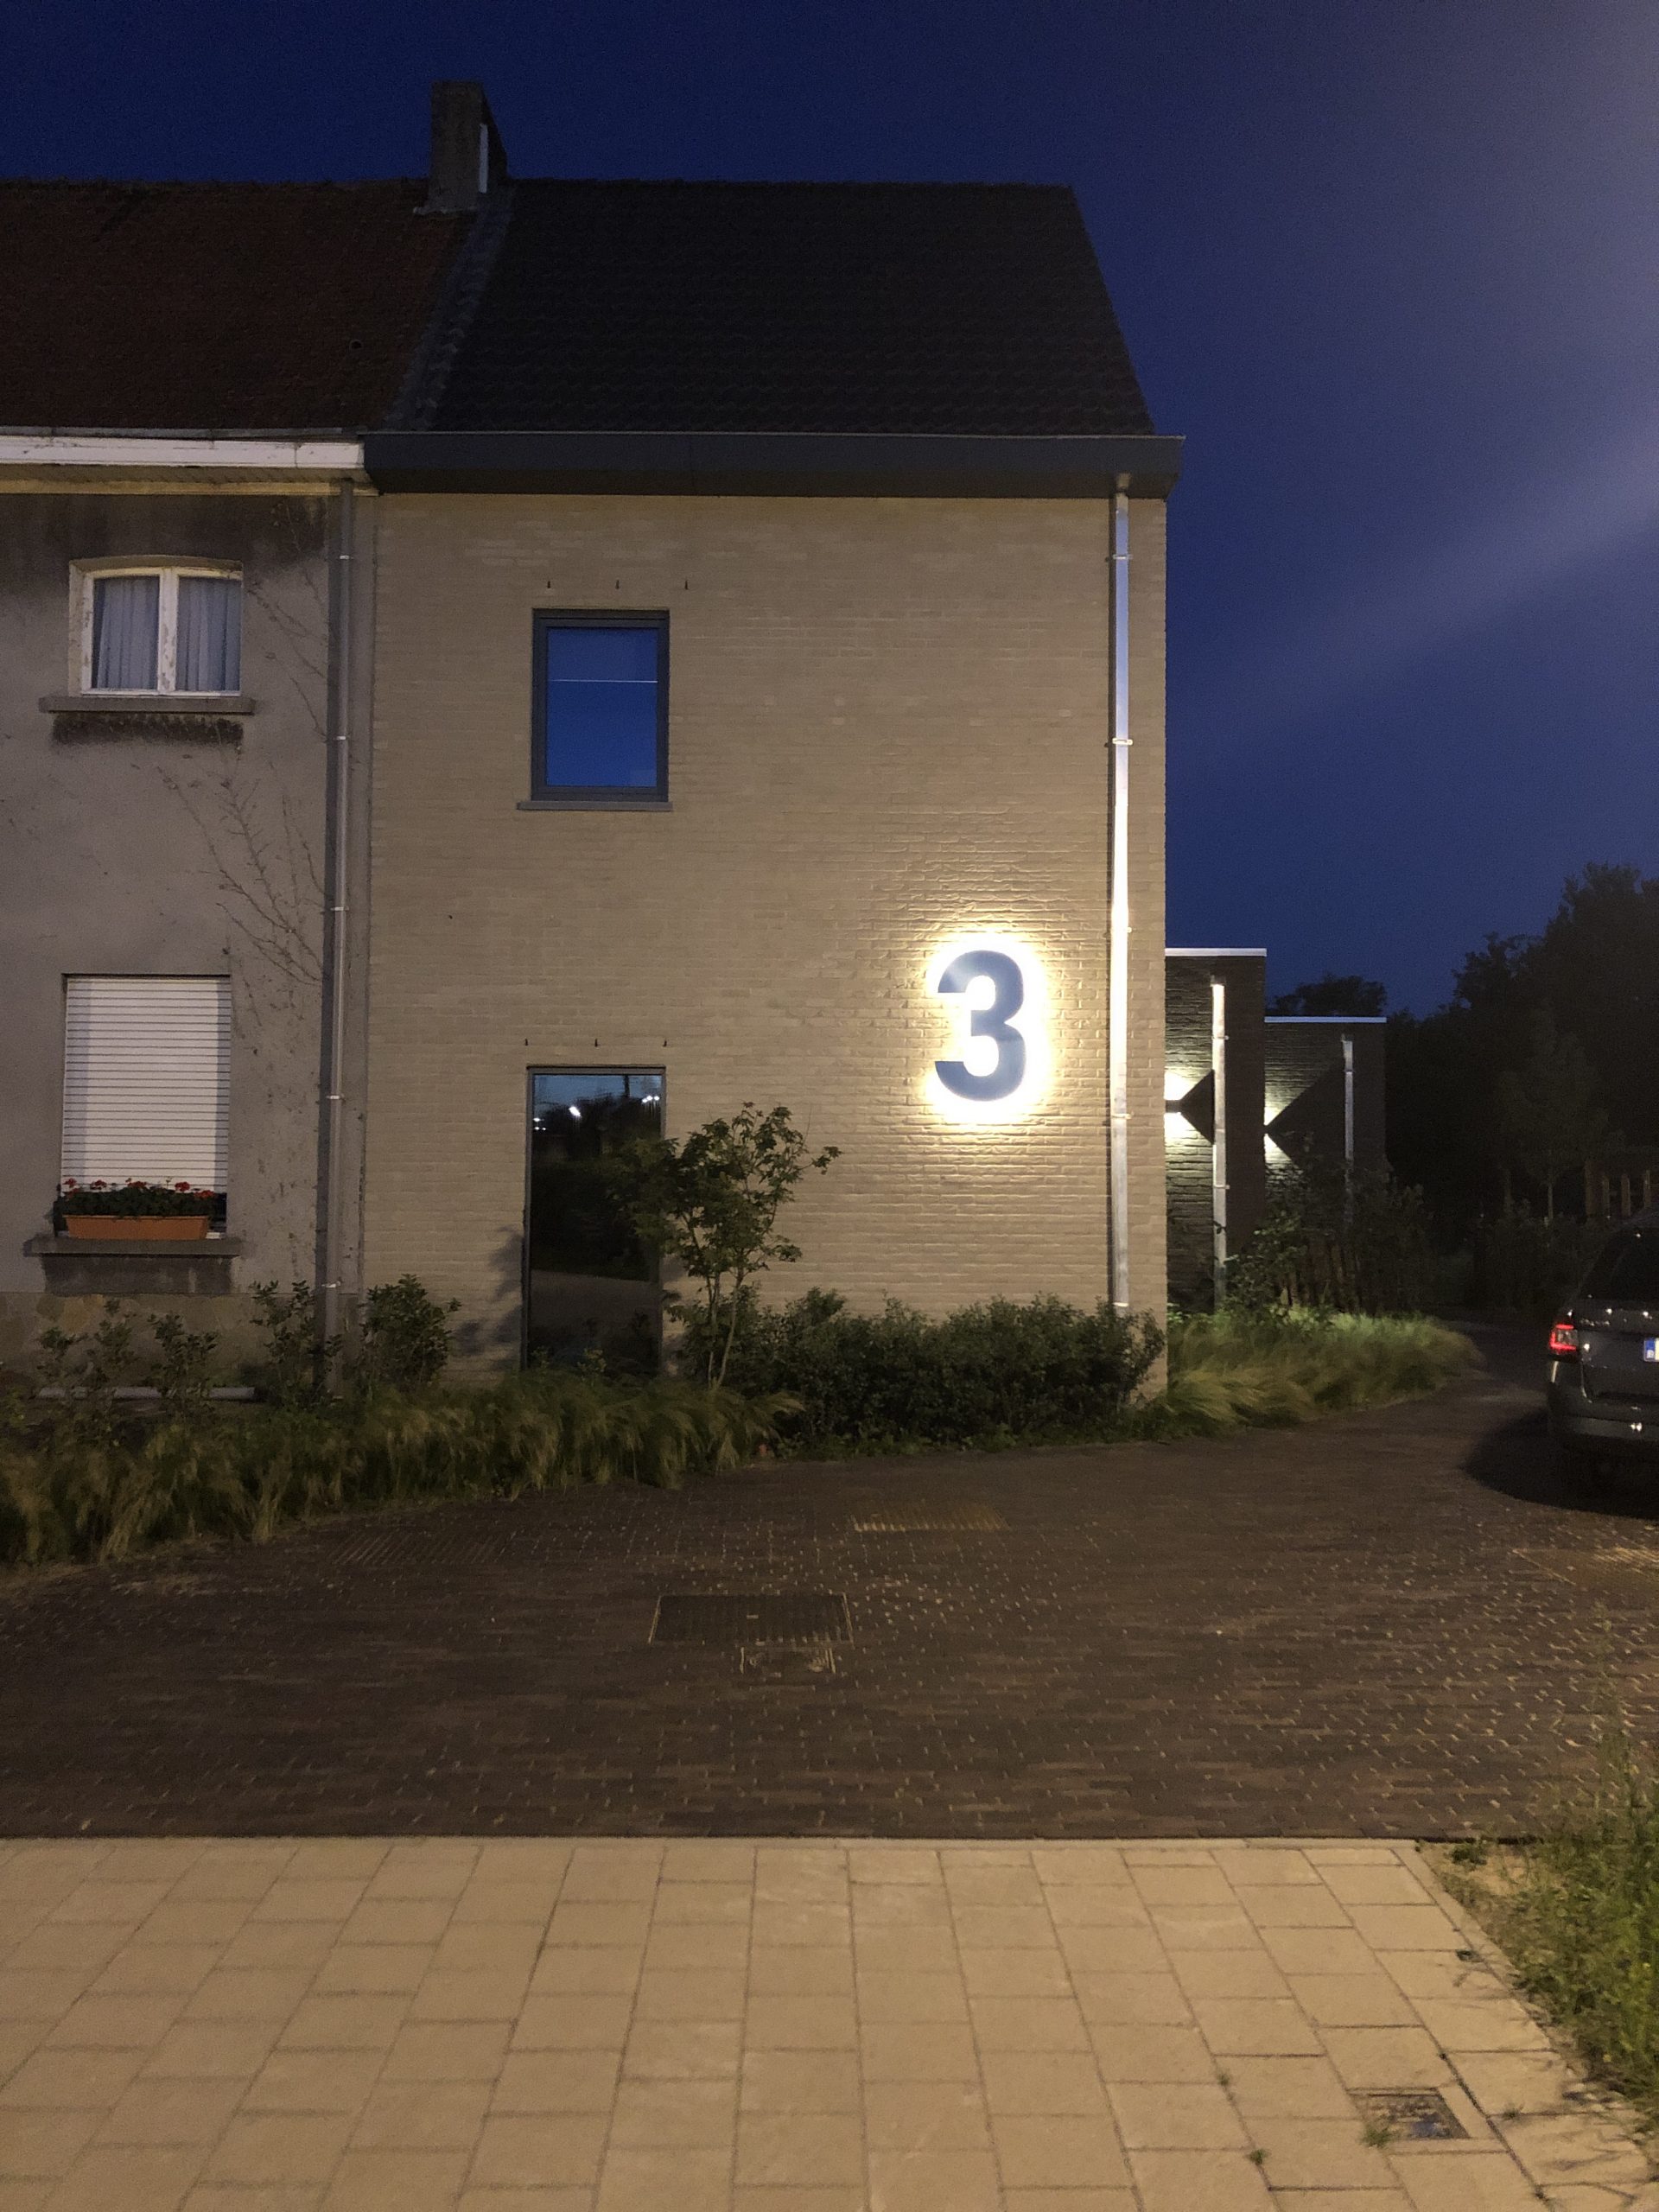 RVS Huisnummer 3 - lettertype Bahnschrift - 100 cm hoog bij avond